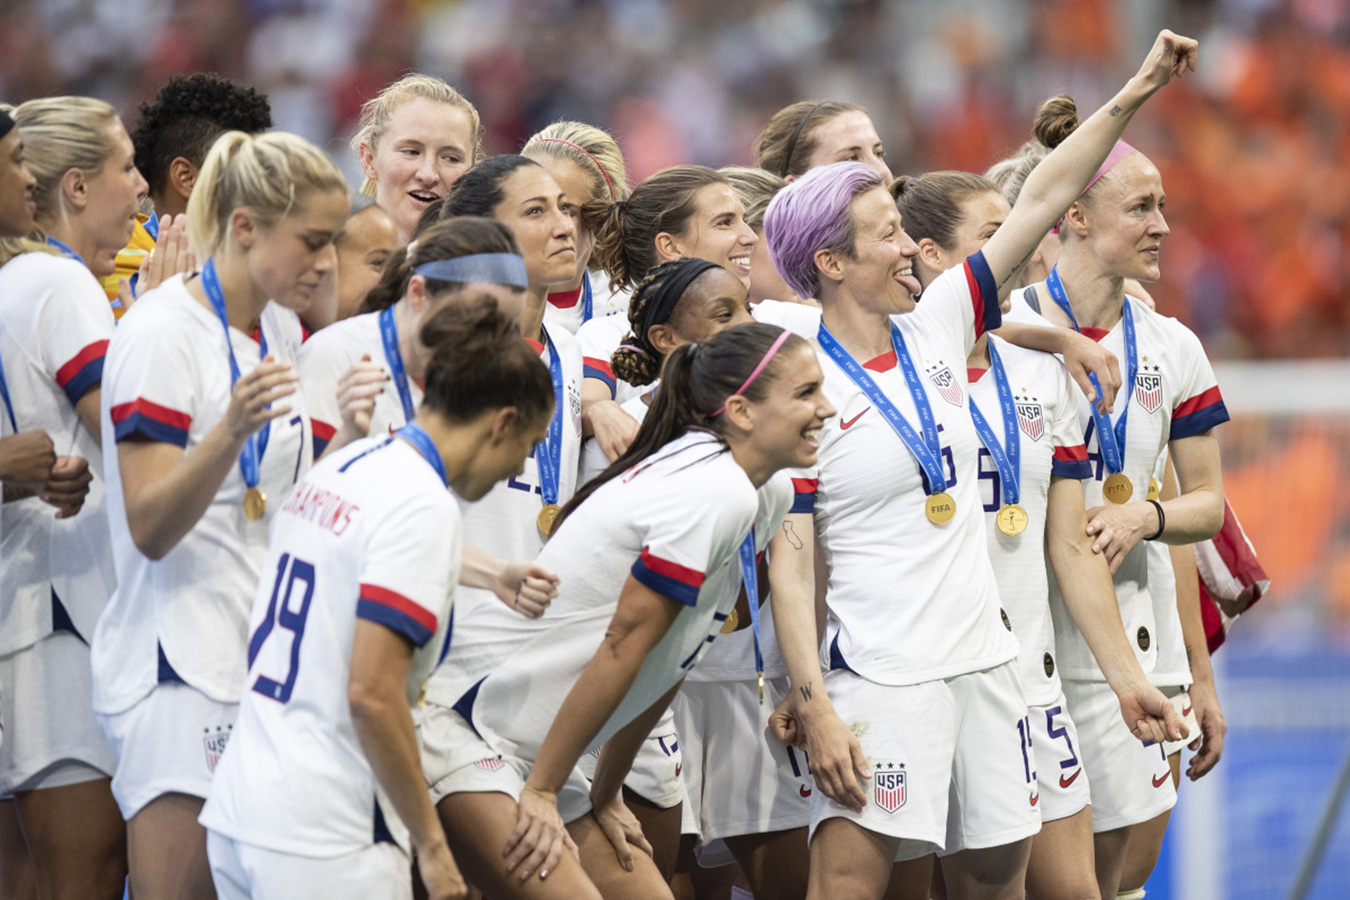 Đội tuyển nữ được trả công như nhau nhưng không phải ai trong bóng đá Mỹ cũng hài lòng